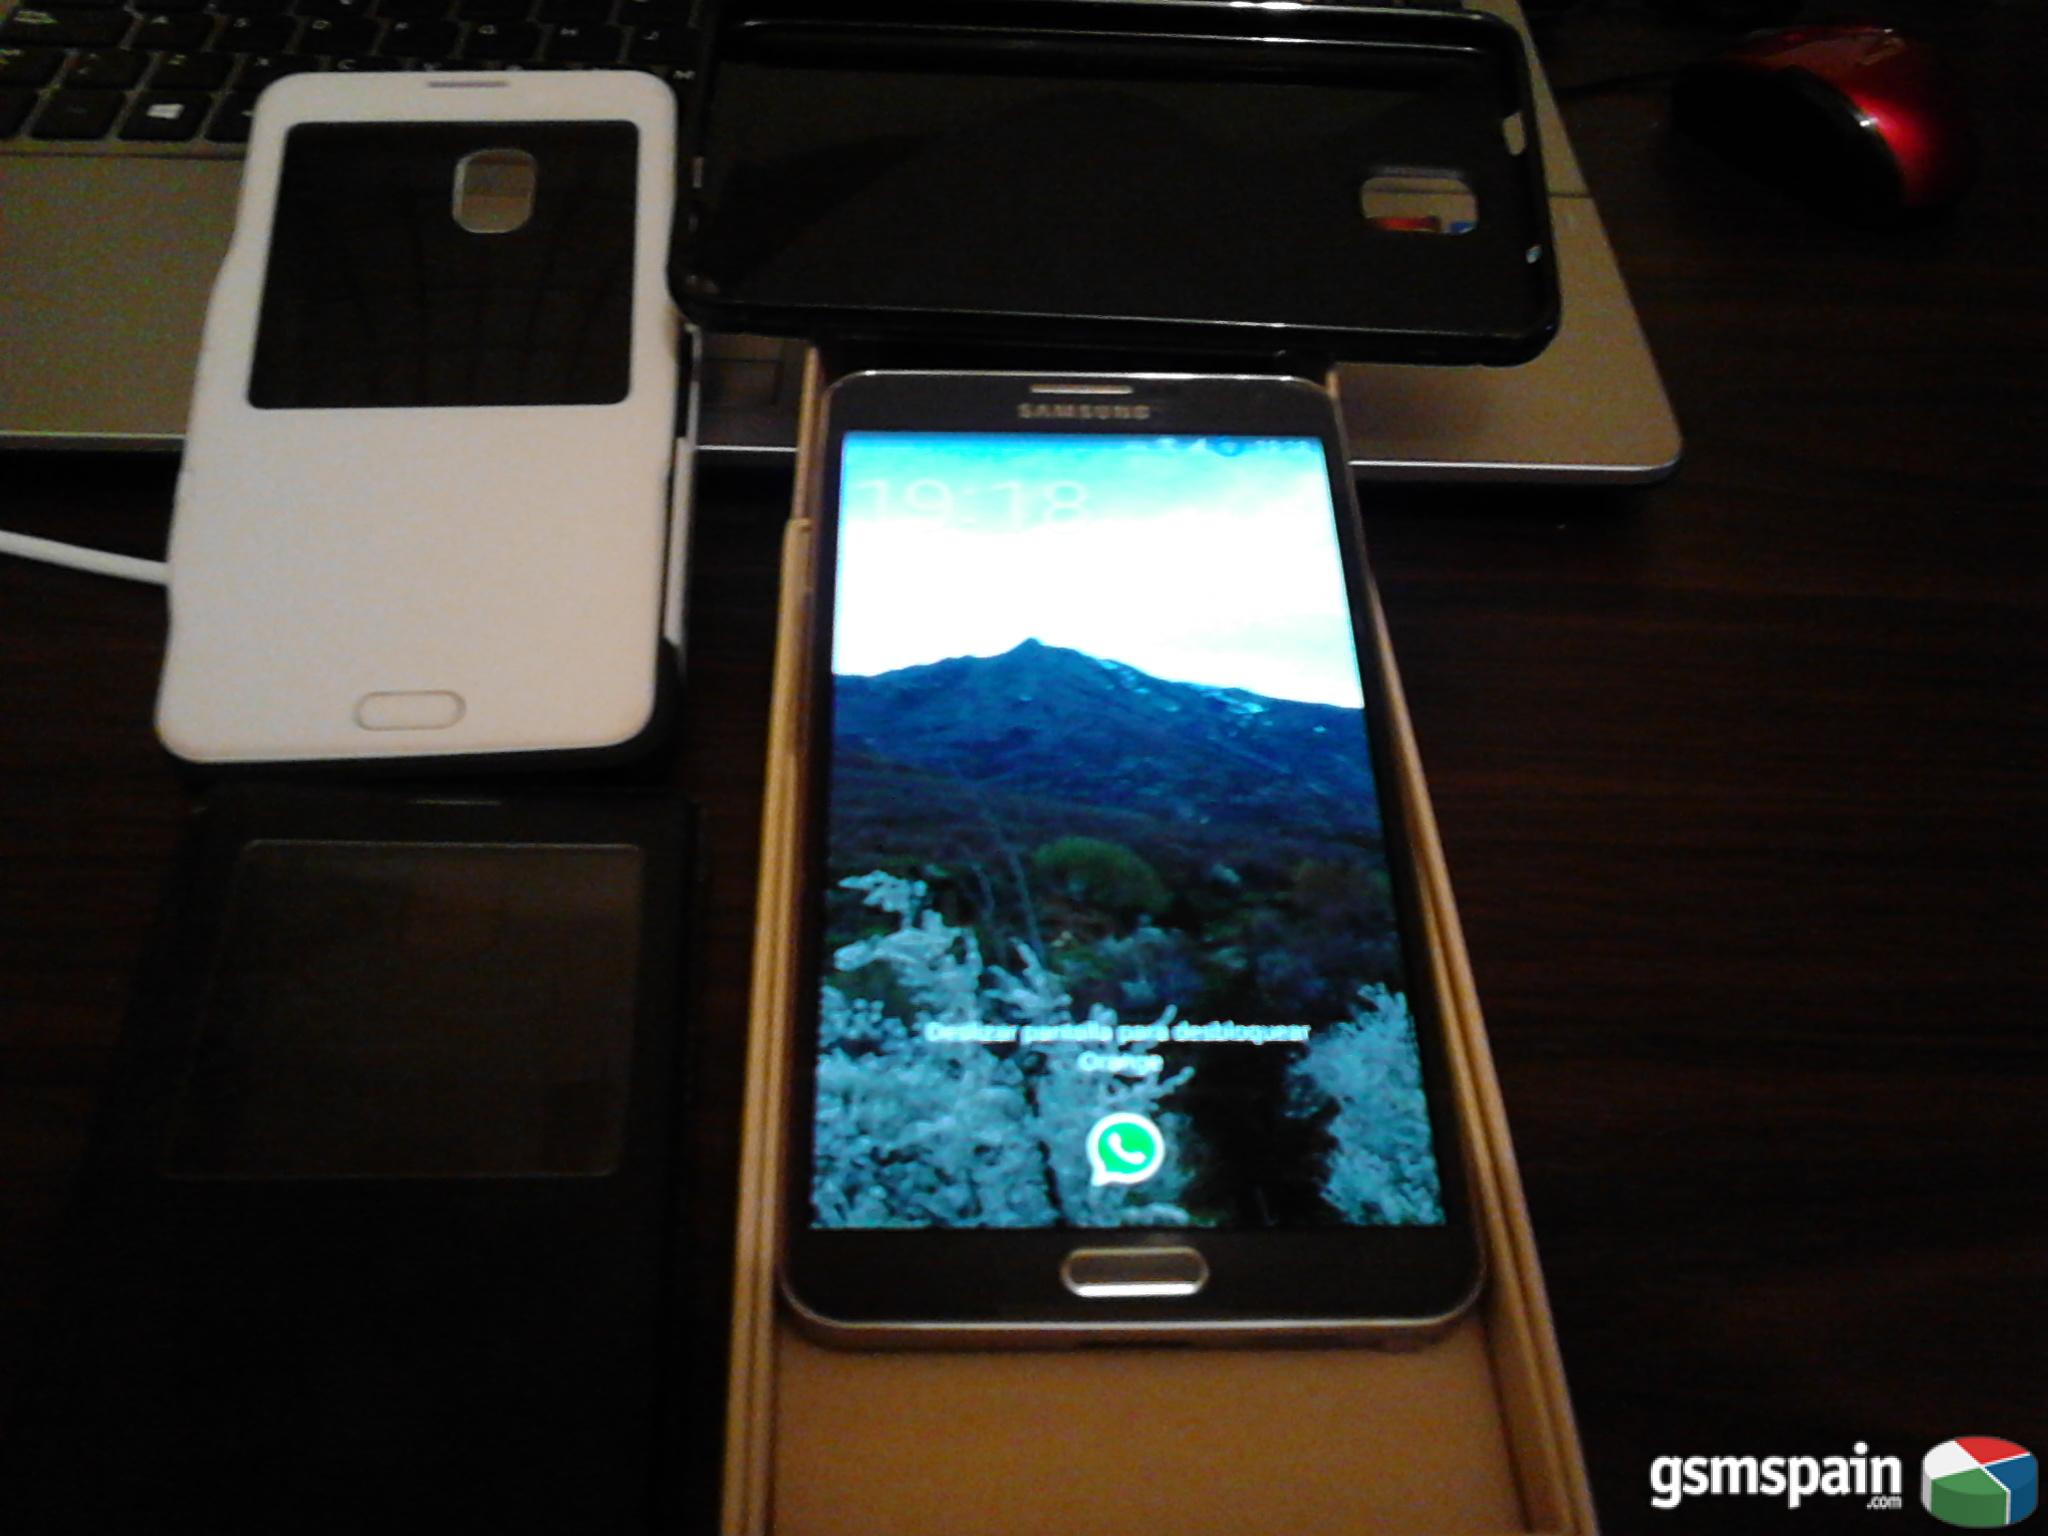 [CAMBIO] Galaxy Note 3 con extras por Iphone 5S (Orange o libre)